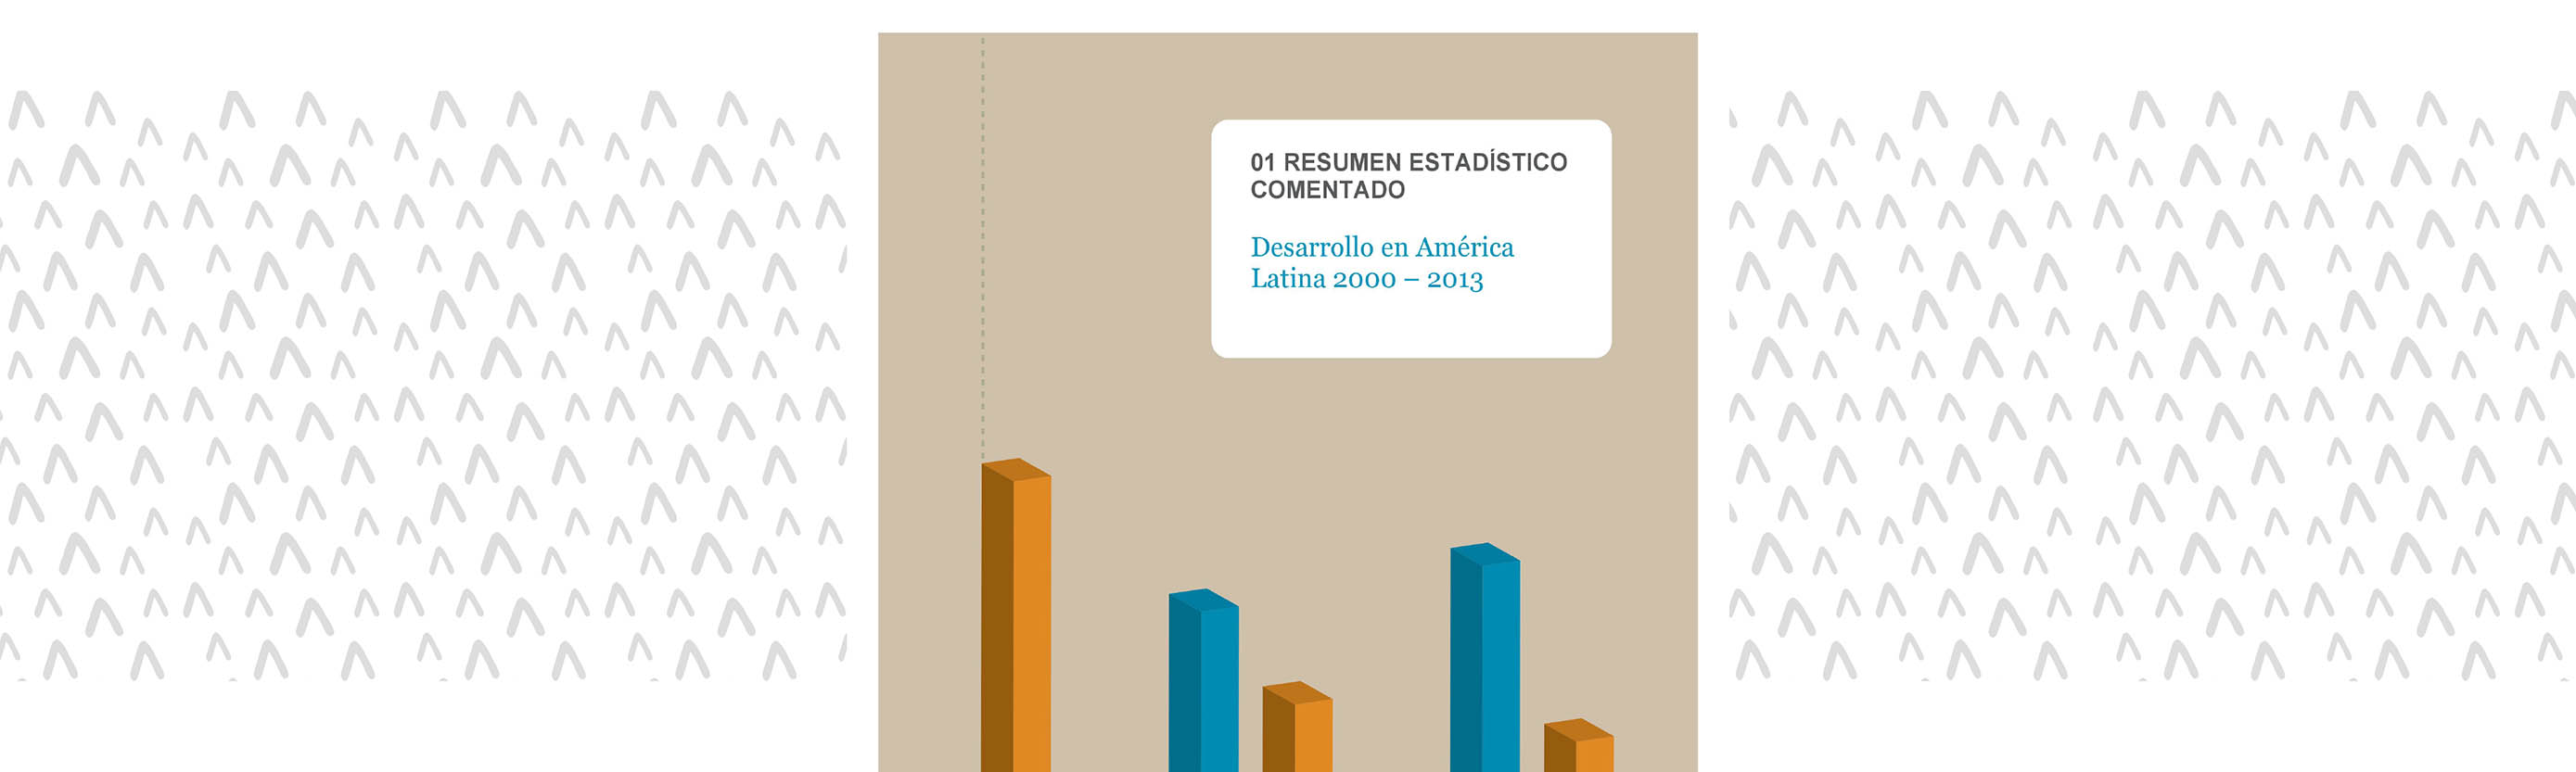 	Desarrollo en América Latina 2000 - 2013. Resumen estadístico comentado